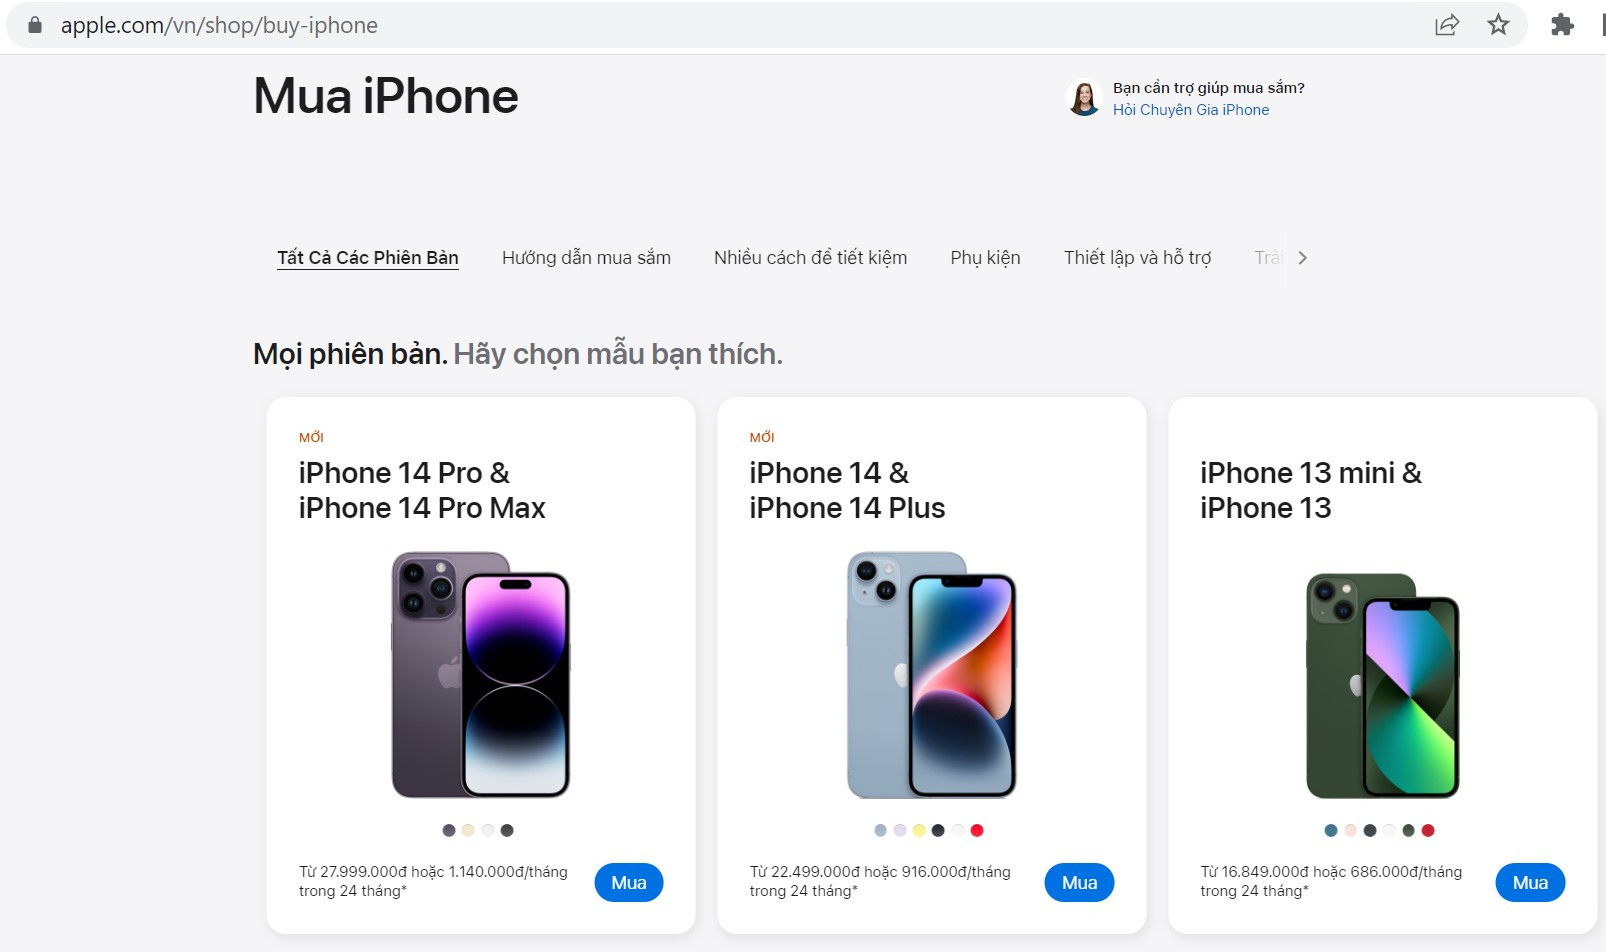 Apple Store online chính thức mở bán tại Việt Nam